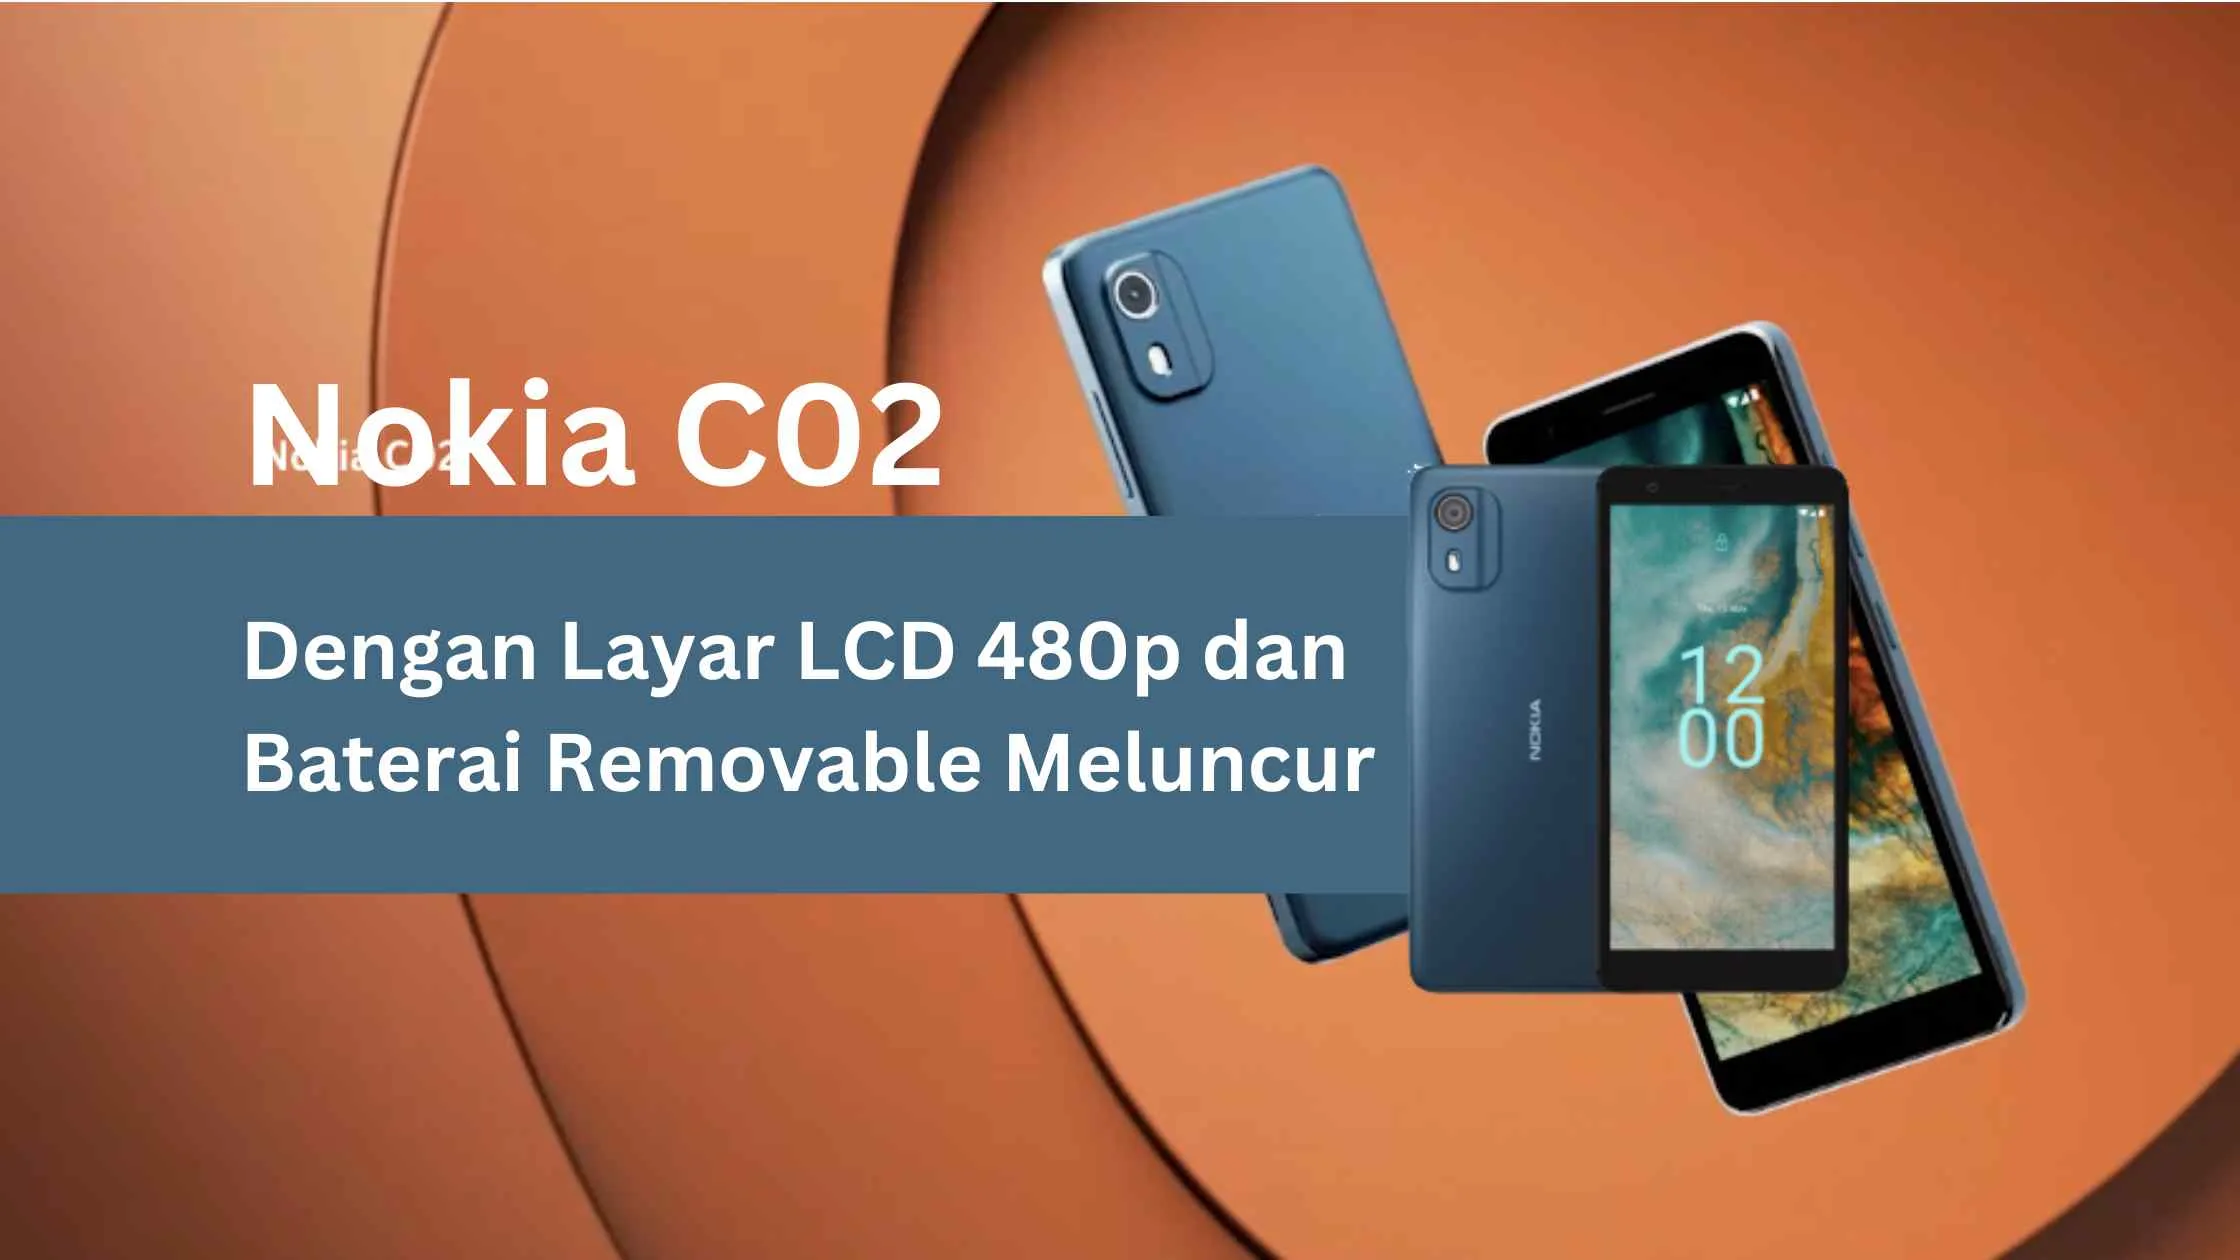 Nokia C02 Dengan Layar LCD 480p dan Baterai Removable Meluncur